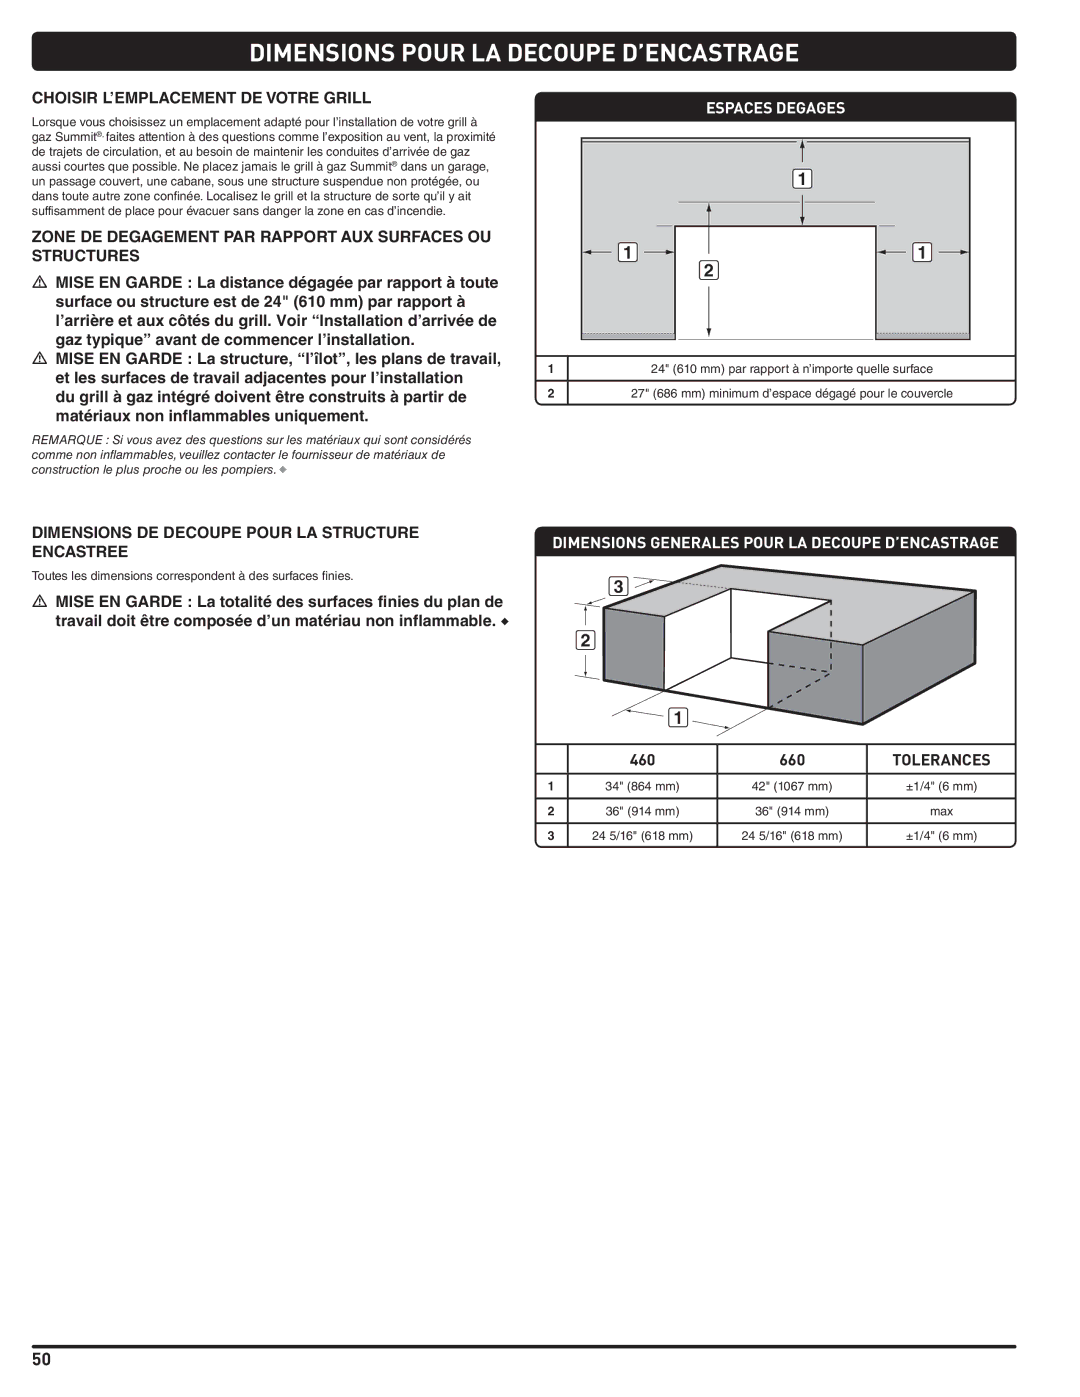 Summit 660-LP, 460-LP manual Choisir L’EMPLACEMENT DE Votre Grill, Zone DE Degagement PAR Rapport AUX Surfaces OU Structures 